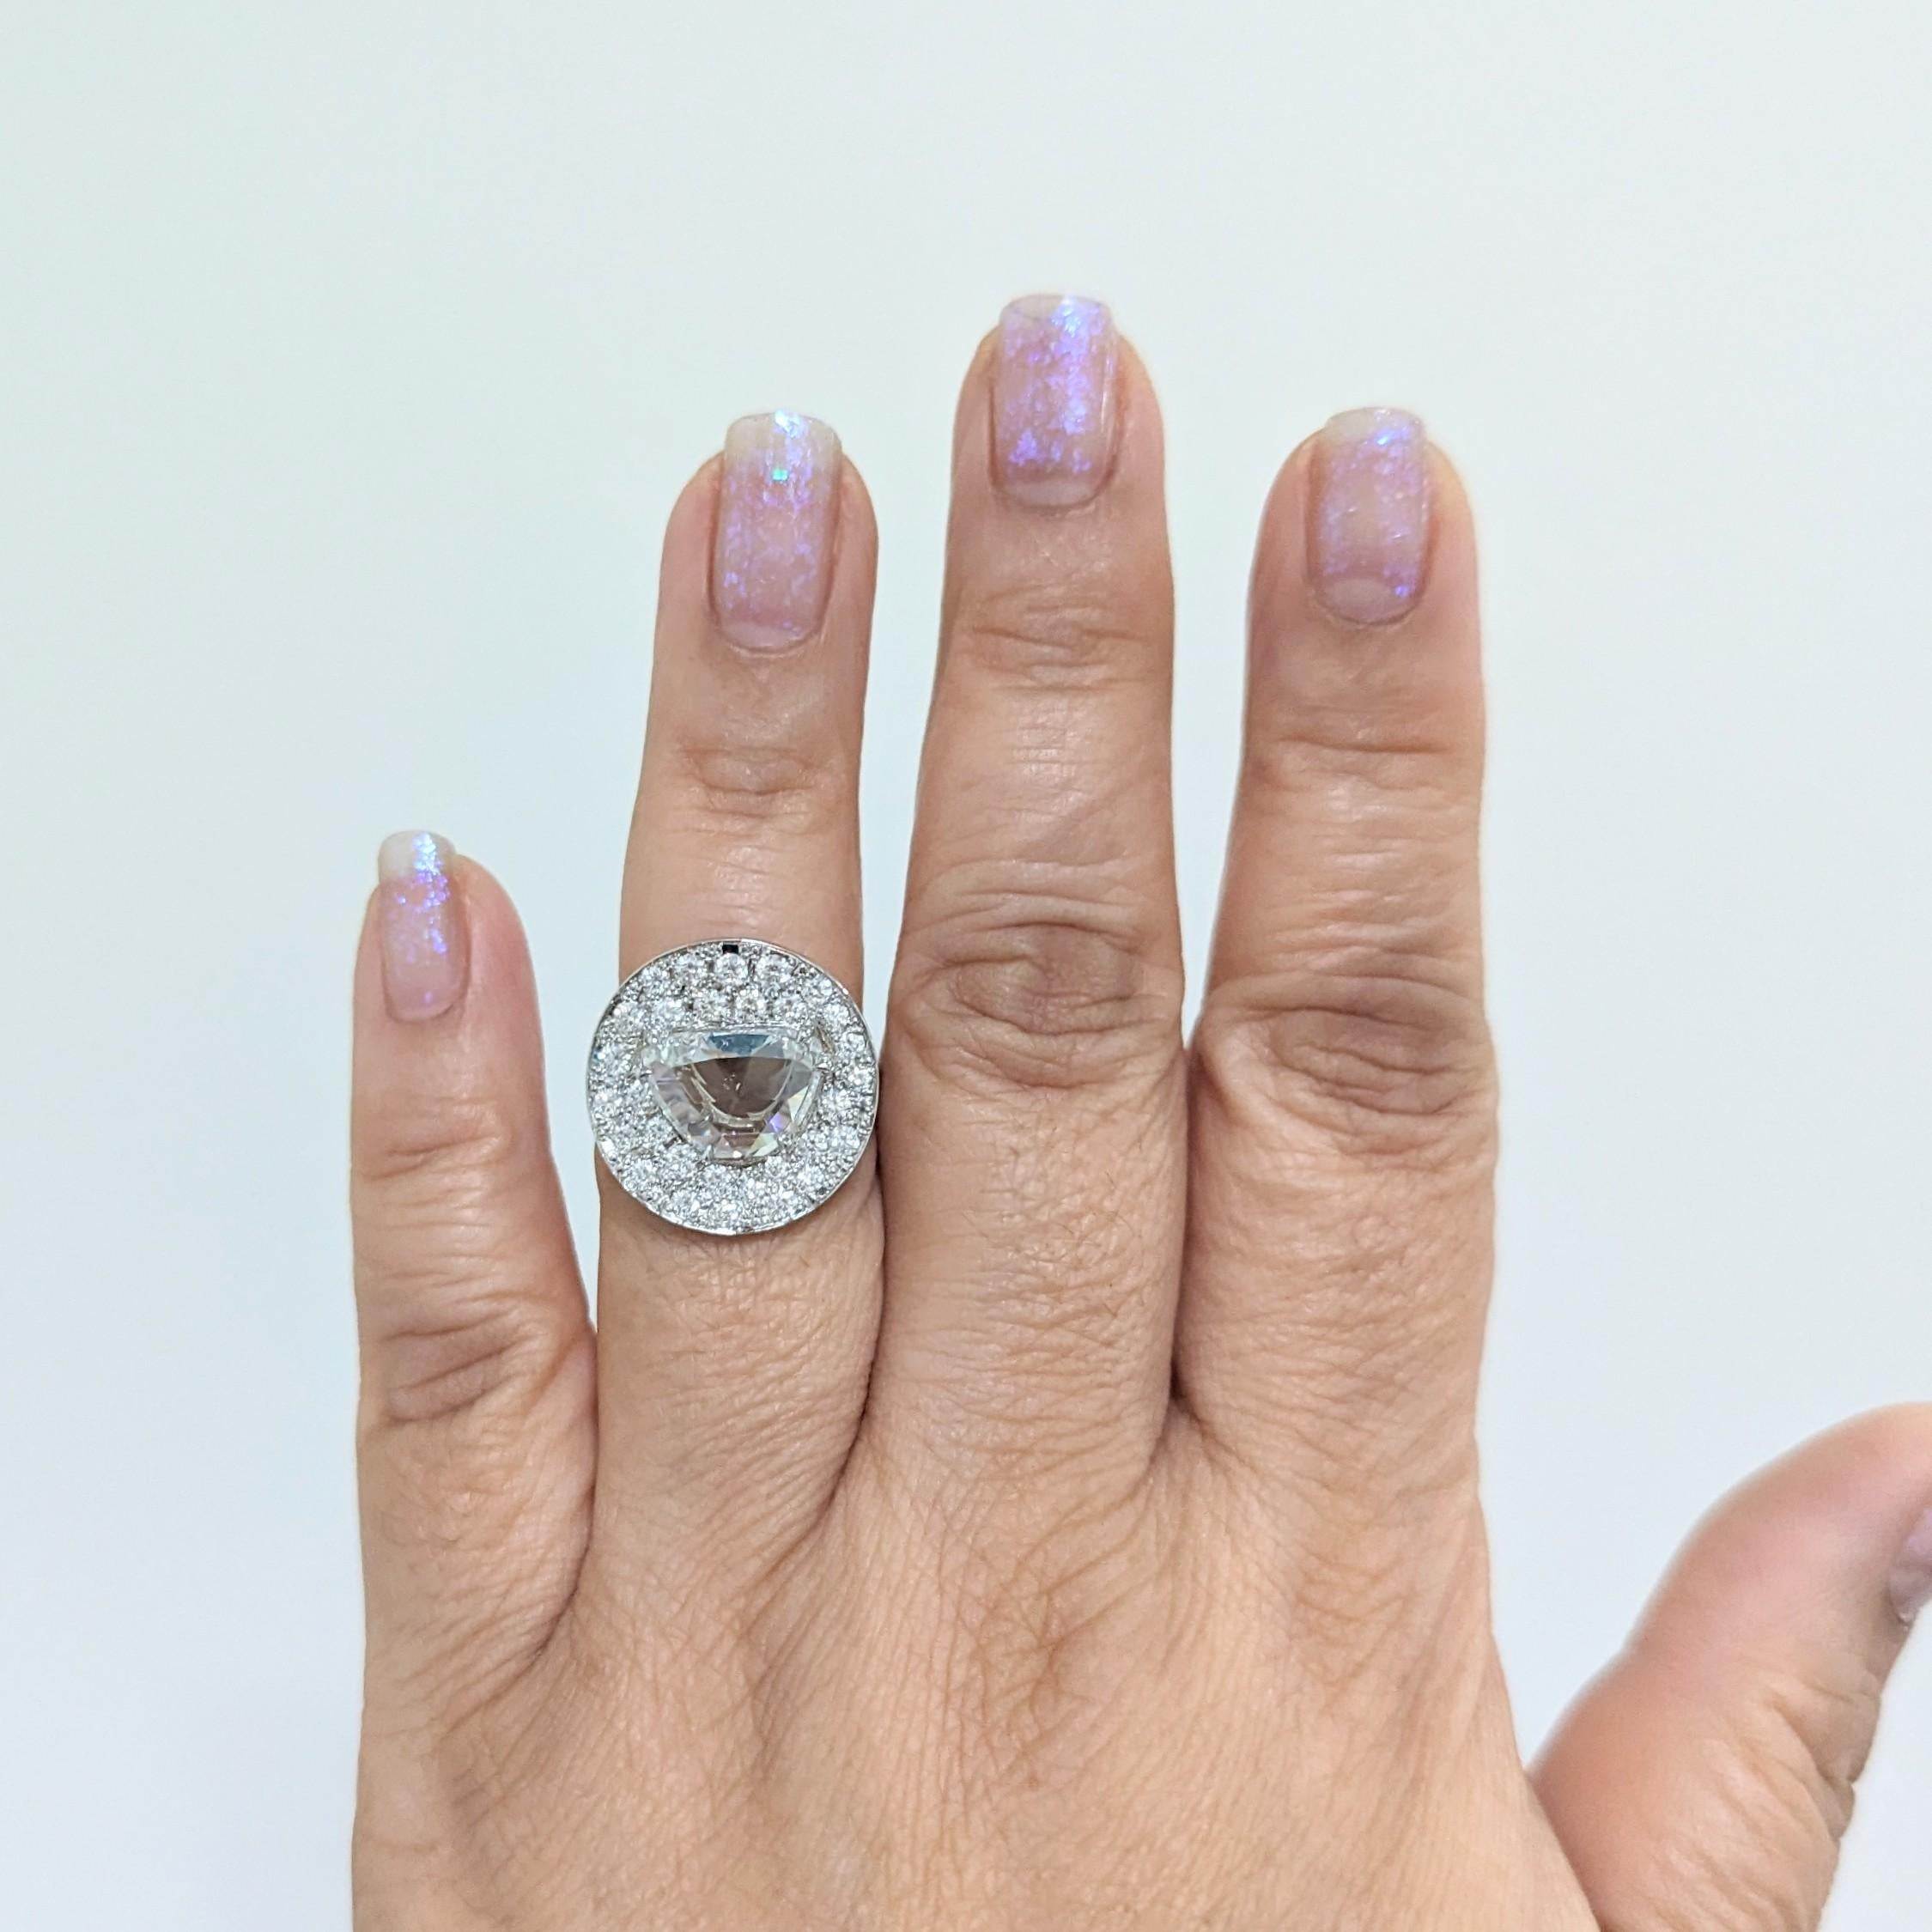 Schöne 2.93 ct. G I1 weißen Diamanten rosecut Halbmond Form mit 1,00 ct. weißen Diamanten rund pave.  Handgefertigt in Platin.  Ringgröße 6,25.  Inklusive GIA-Zertifikat.